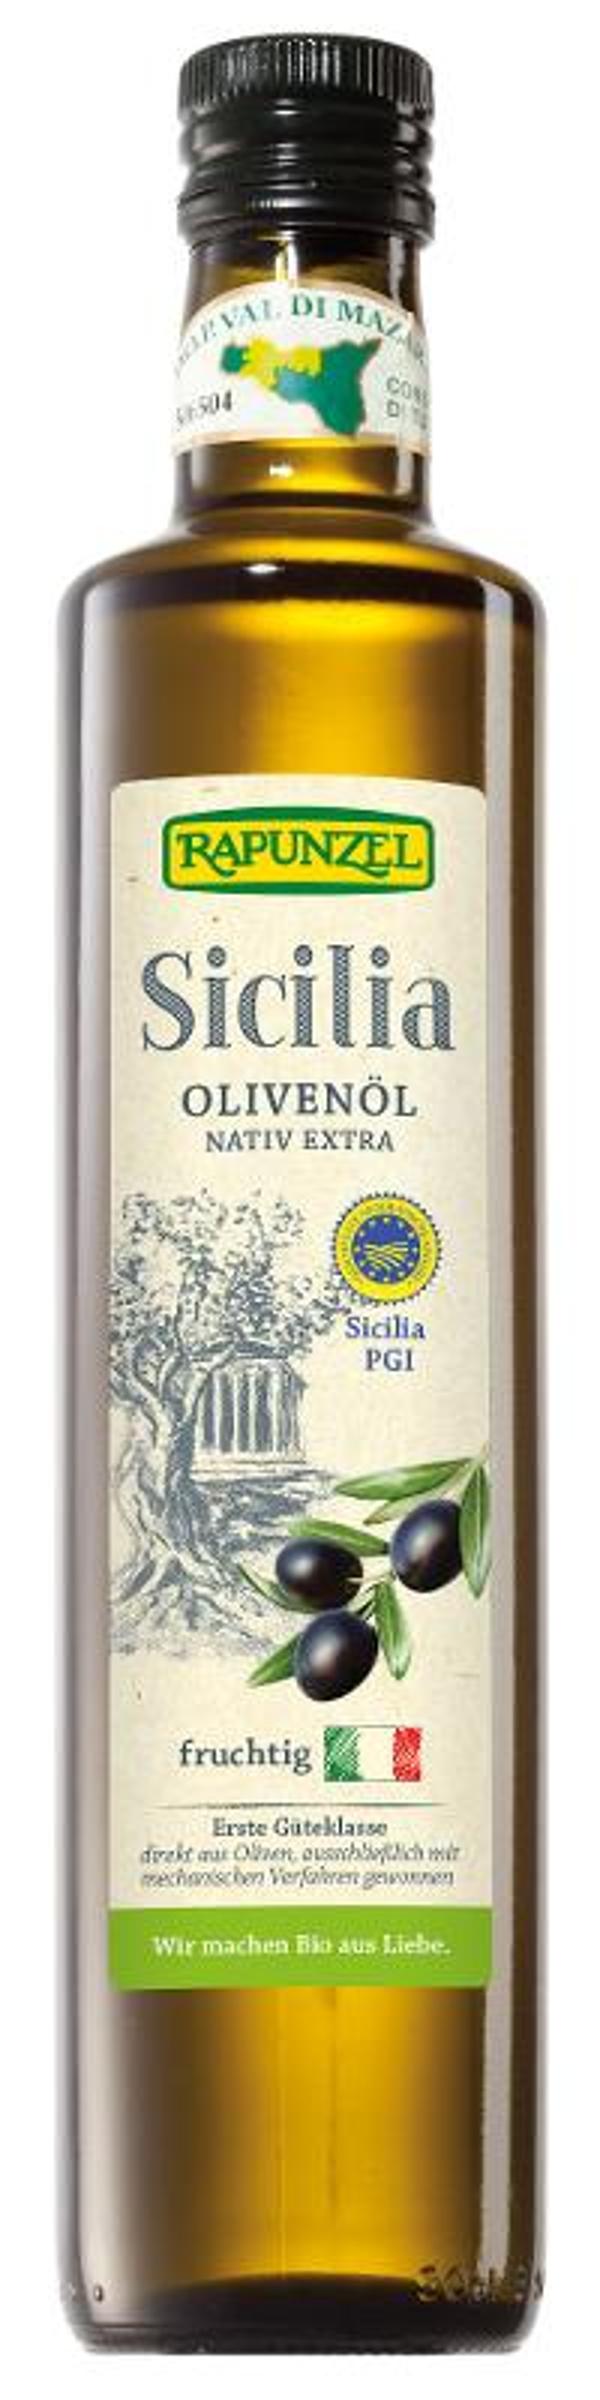 Produktfoto zu Olivenöl Sicilia, nativ extra